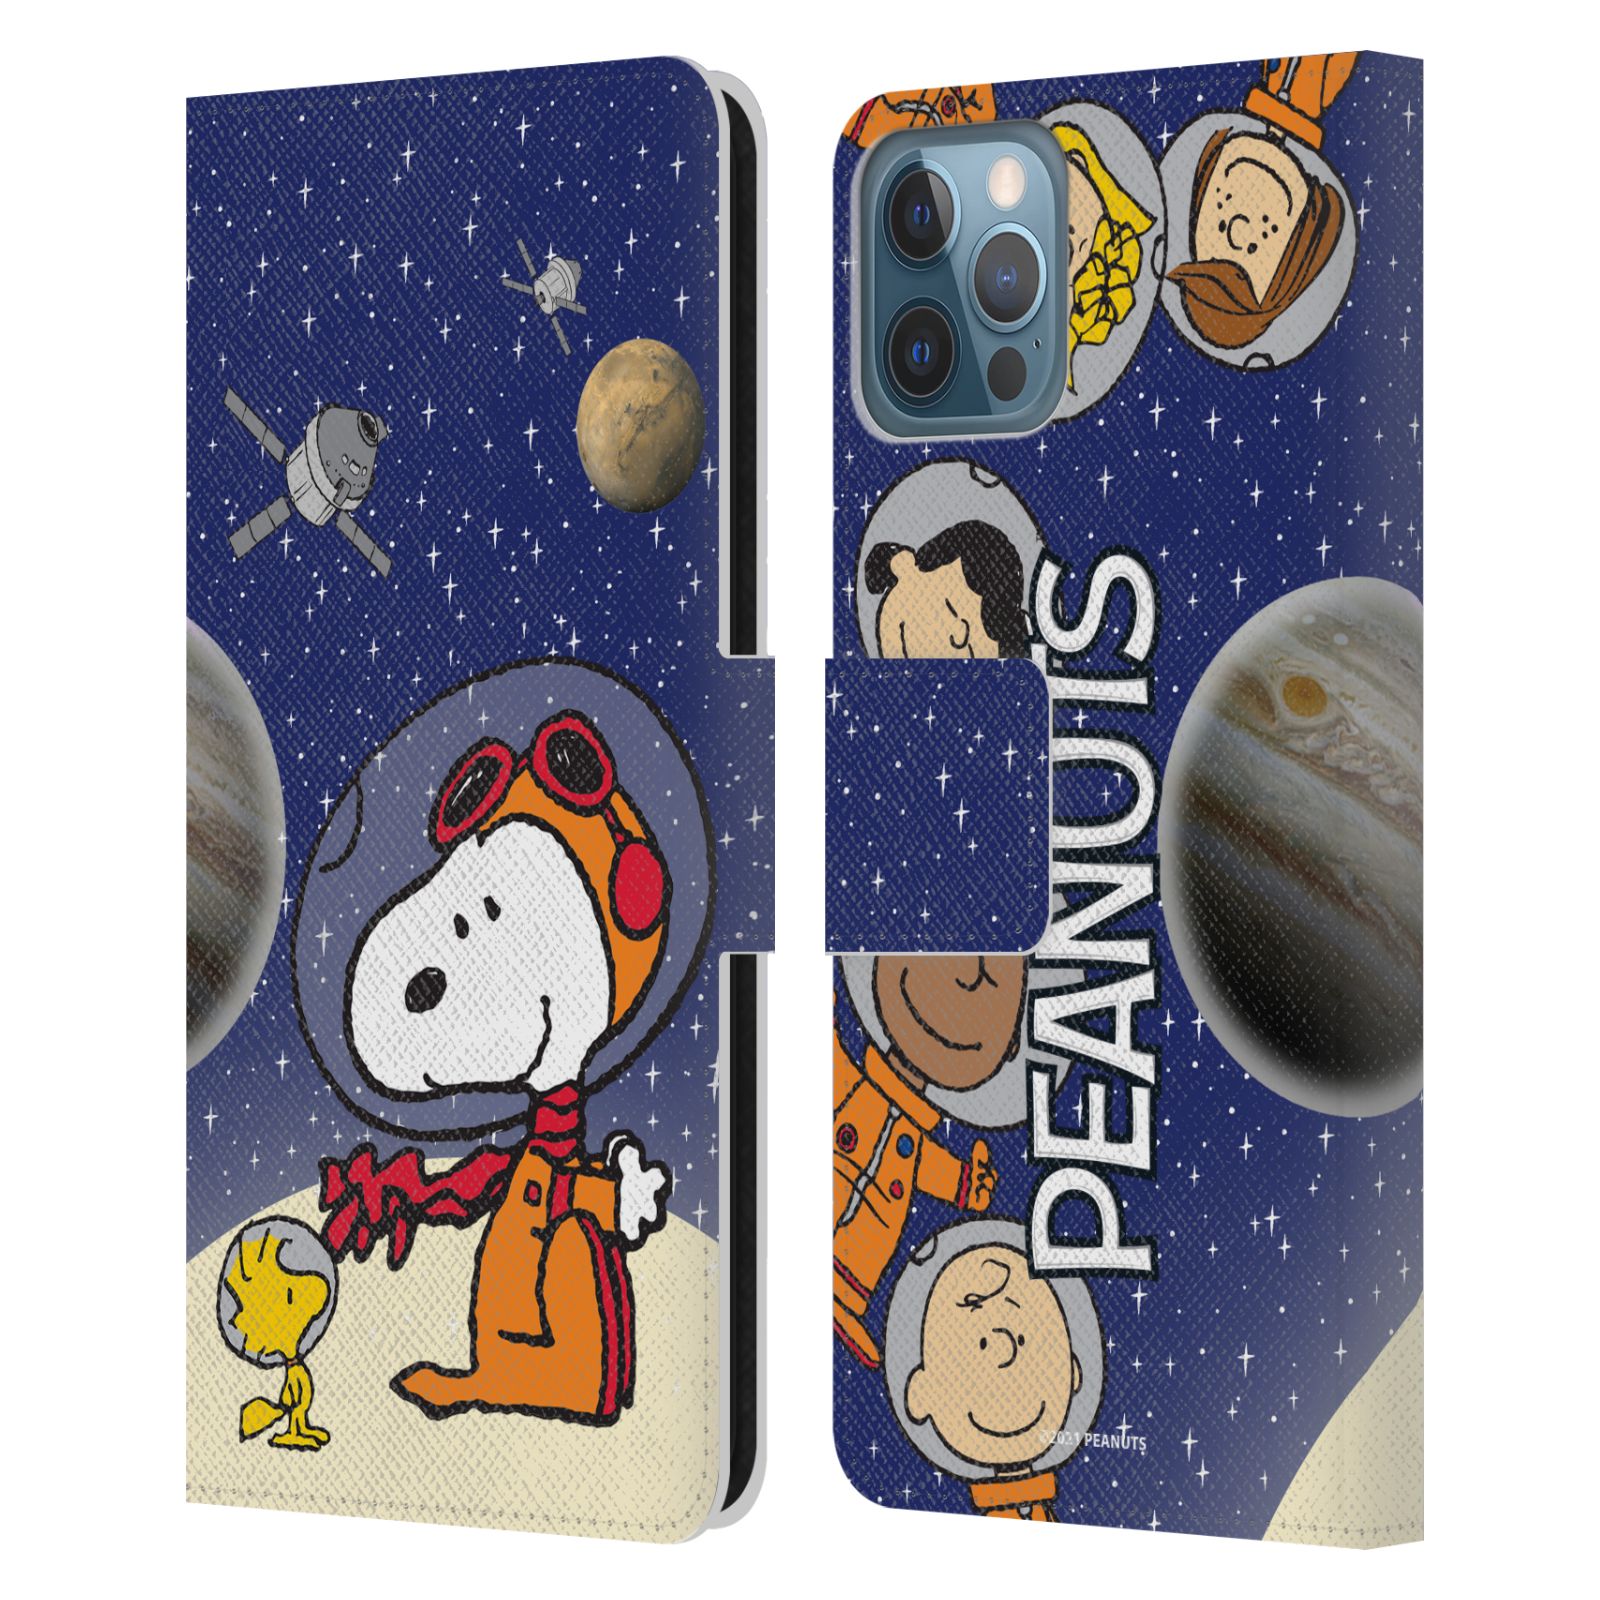 Pouzdro na mobil Apple Iphone 12 / 12 Pro - HEAD CASE - Peanuts Snoopy ve vesmíru 2